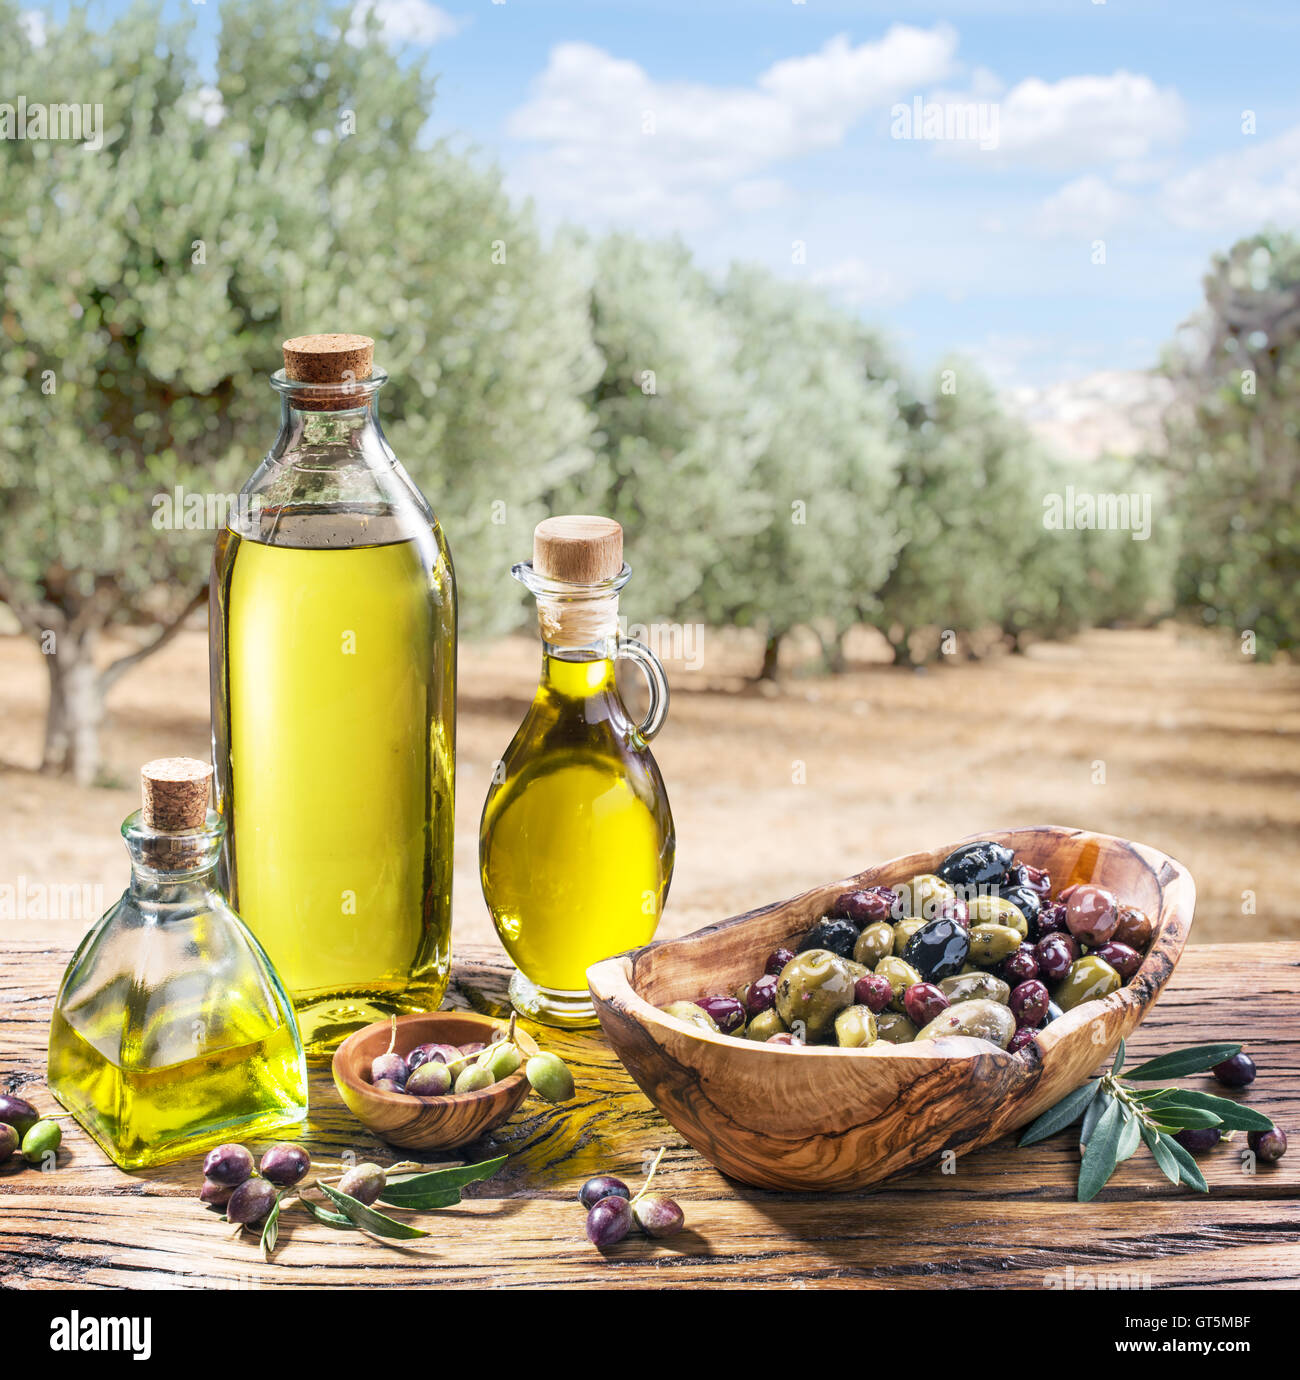 El aceite de oliva y bayas están sobre la mesa de madera bajo el olivo. Foto de stock